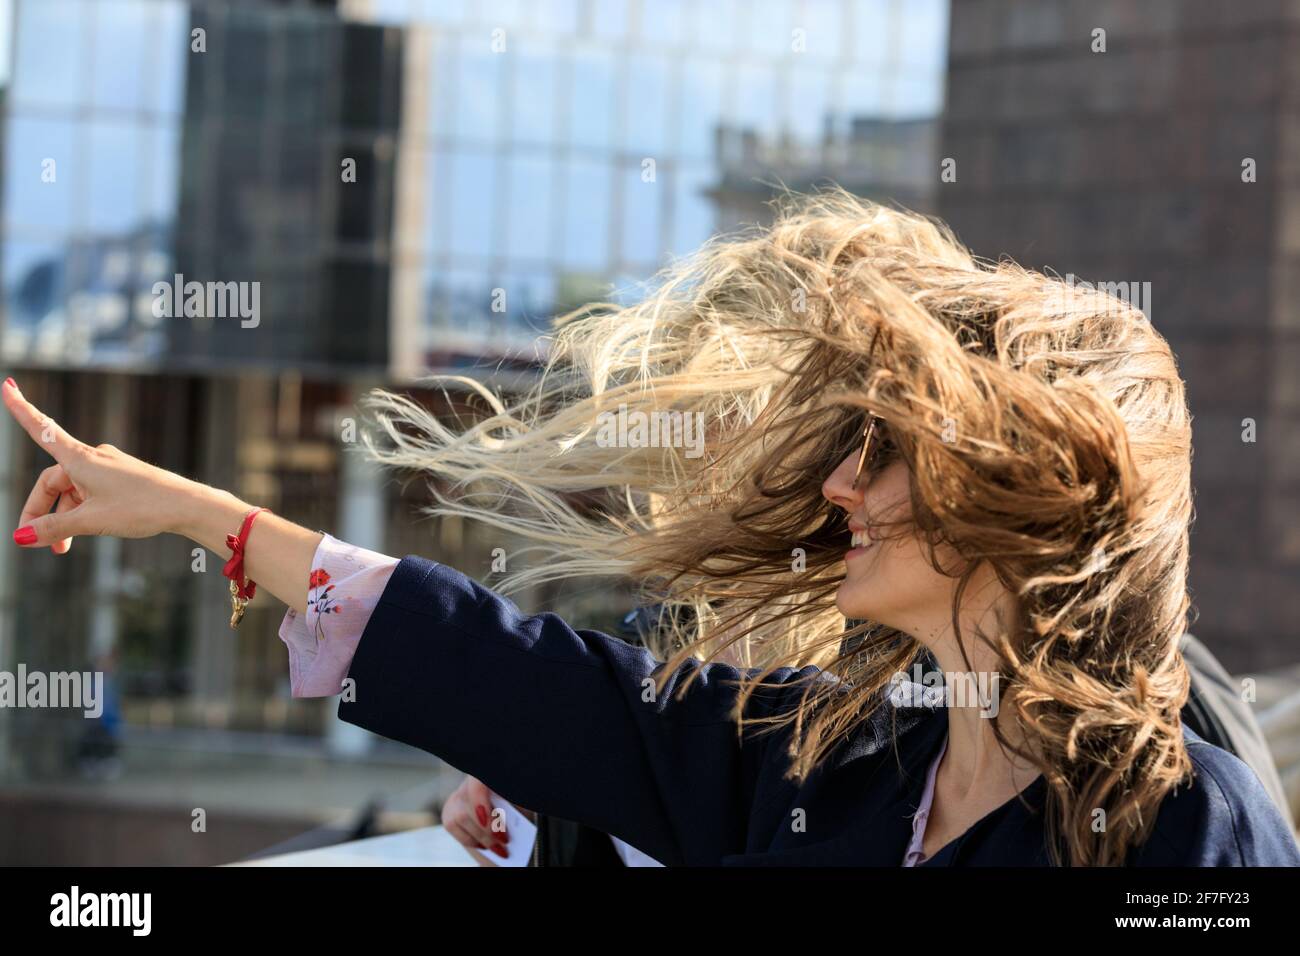 Zwei junge Frauen mit langen Haaren, die im Wind wehen Am stürmischen Wettertag mit böigen Winden Stockfoto